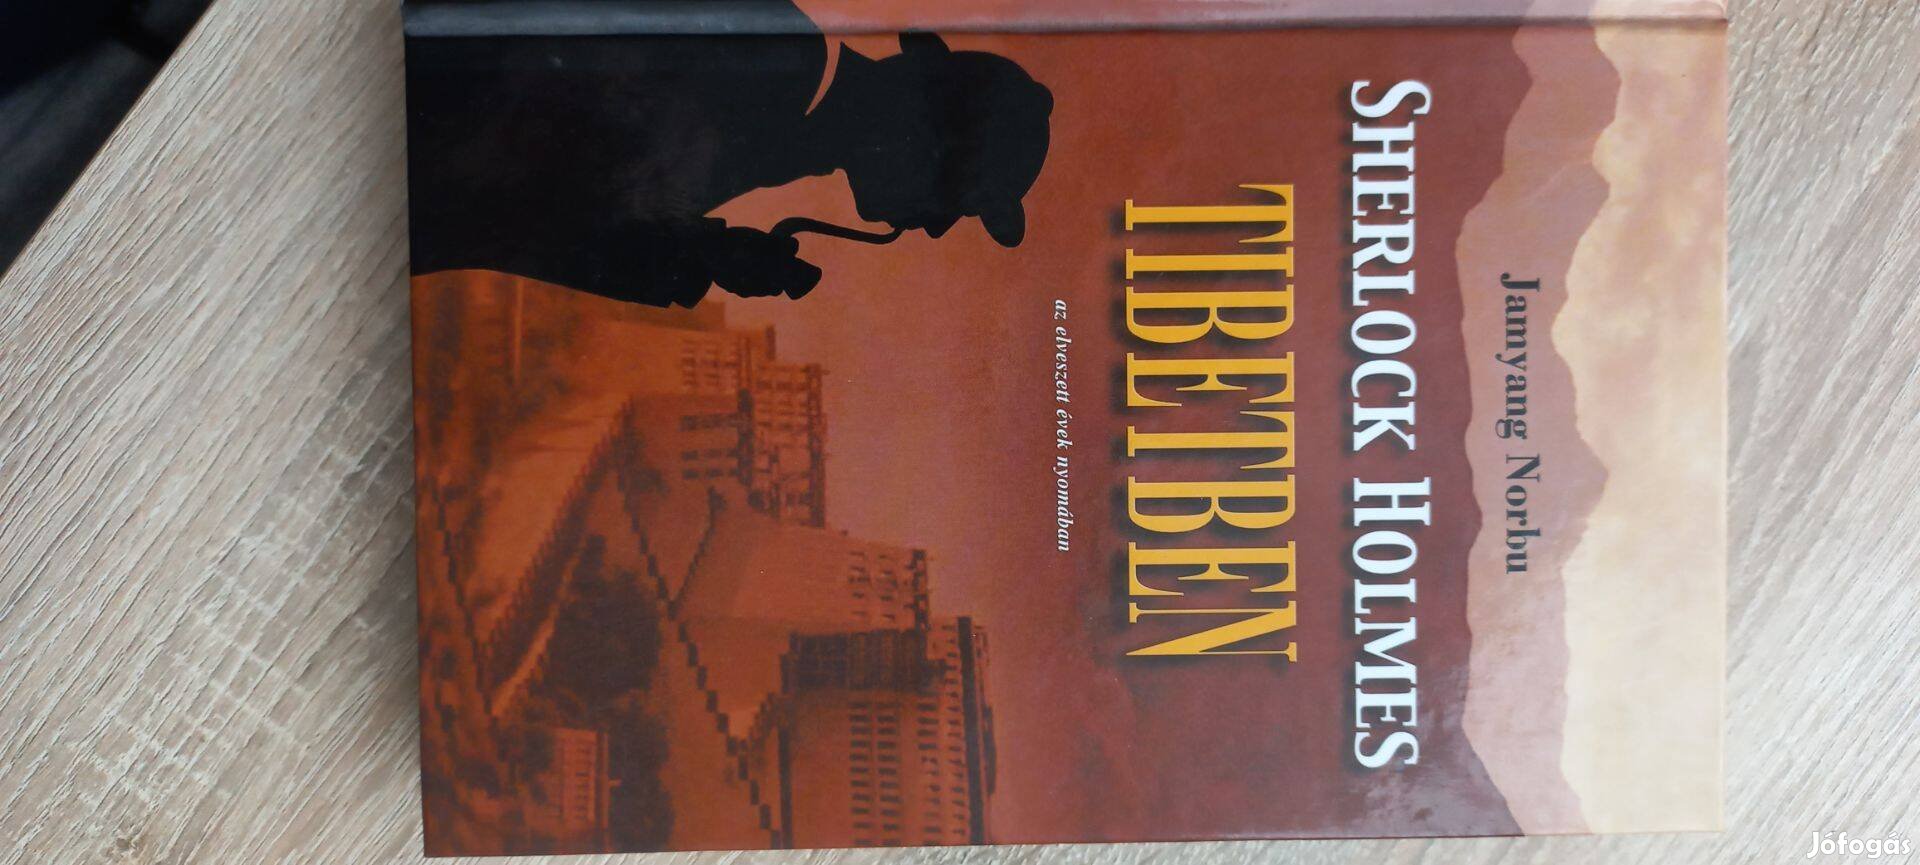 Sherlock Holmes Tibetben (az elveszett évek nyomában) - Jamyang Norbu